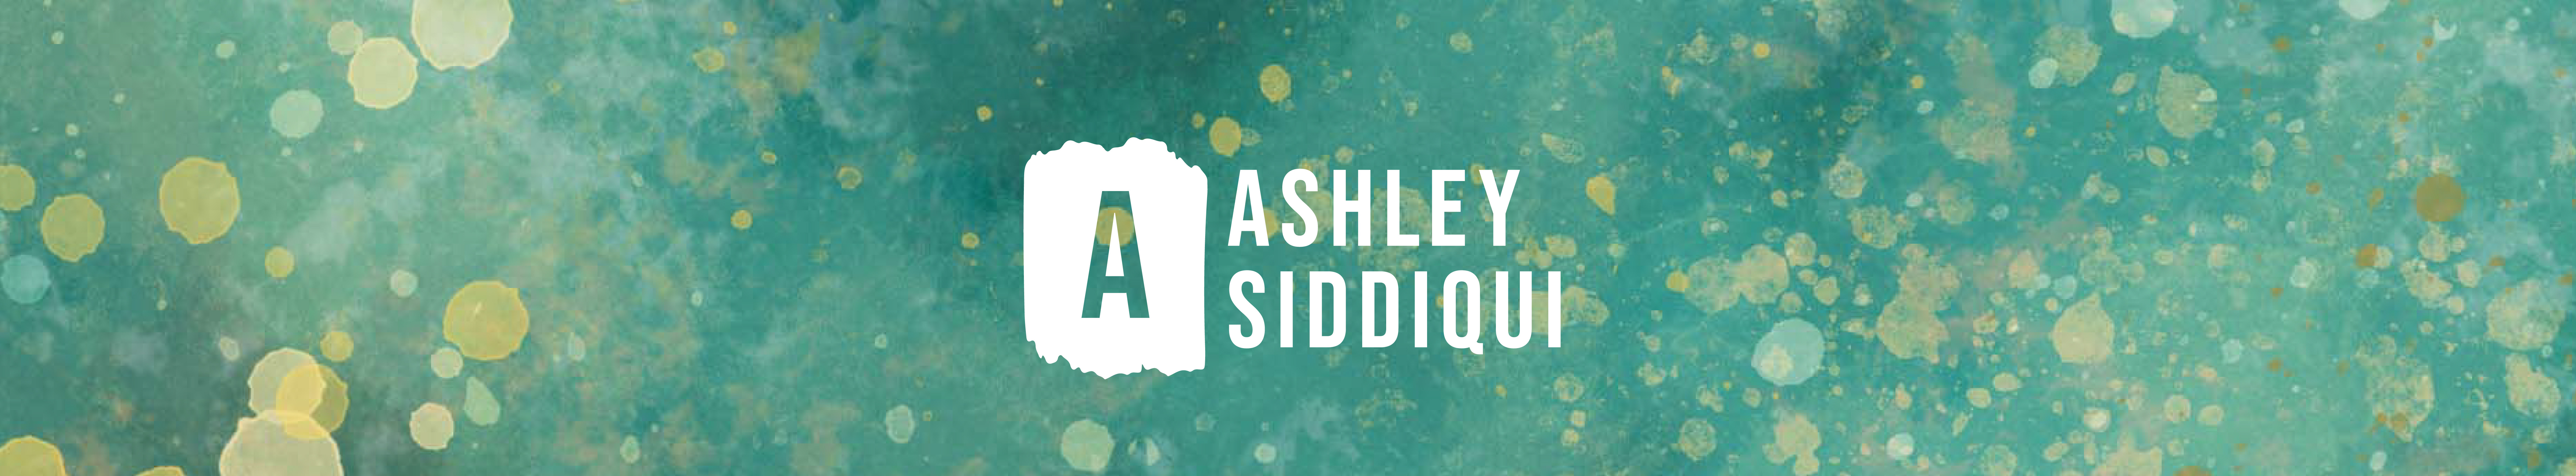 Bannière de profil de Ashley Siddiqui